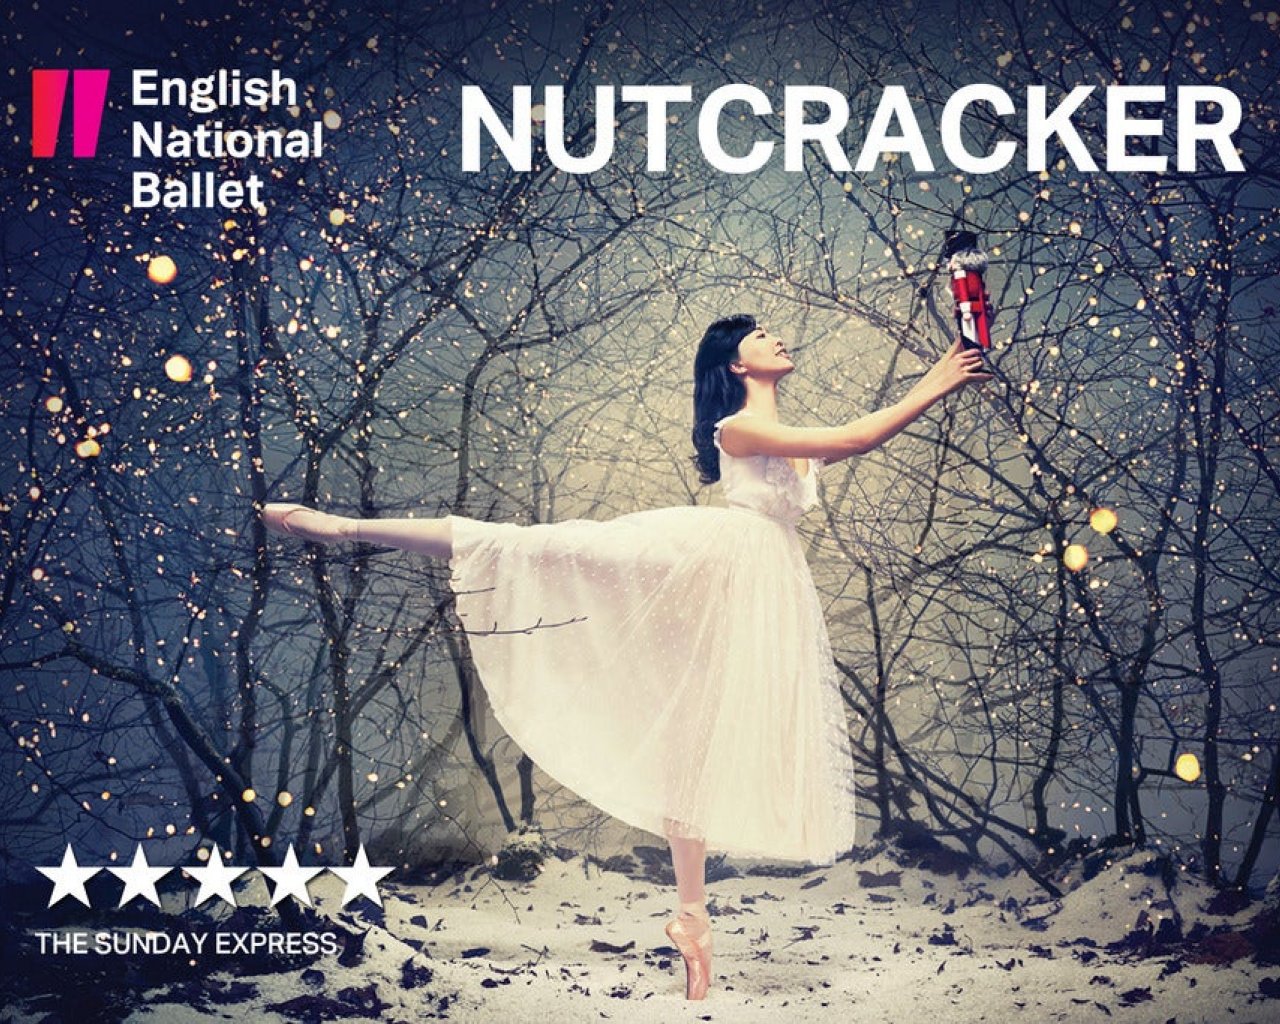 The Nutcracker - English National Ballet